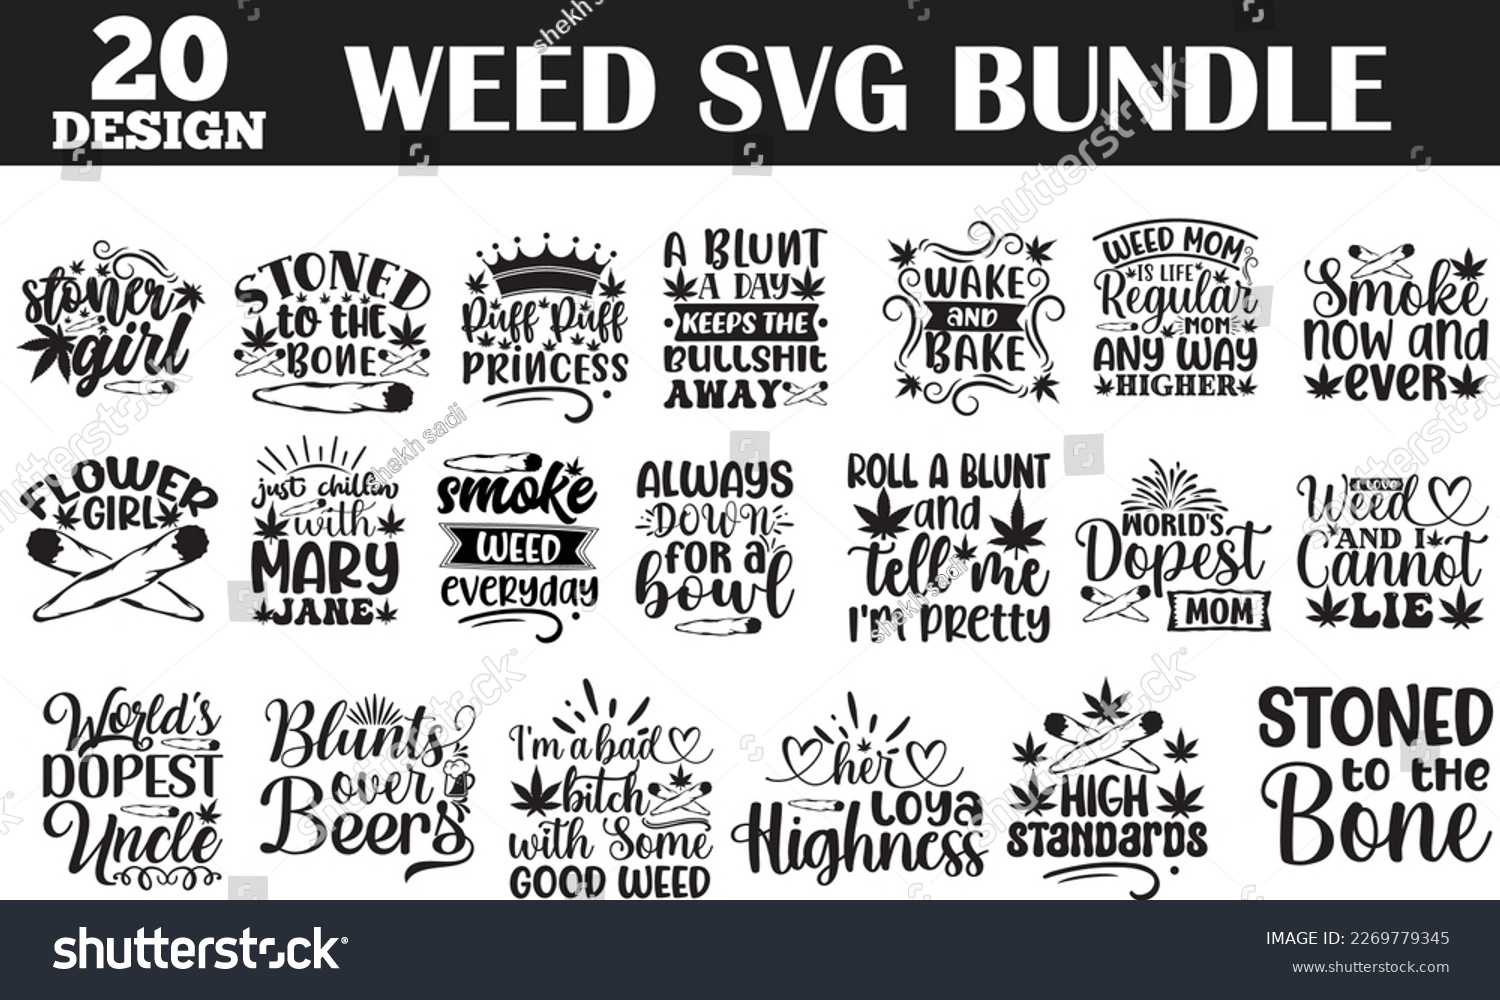 SVG of weed svg bundle 
weed svg bundle svg